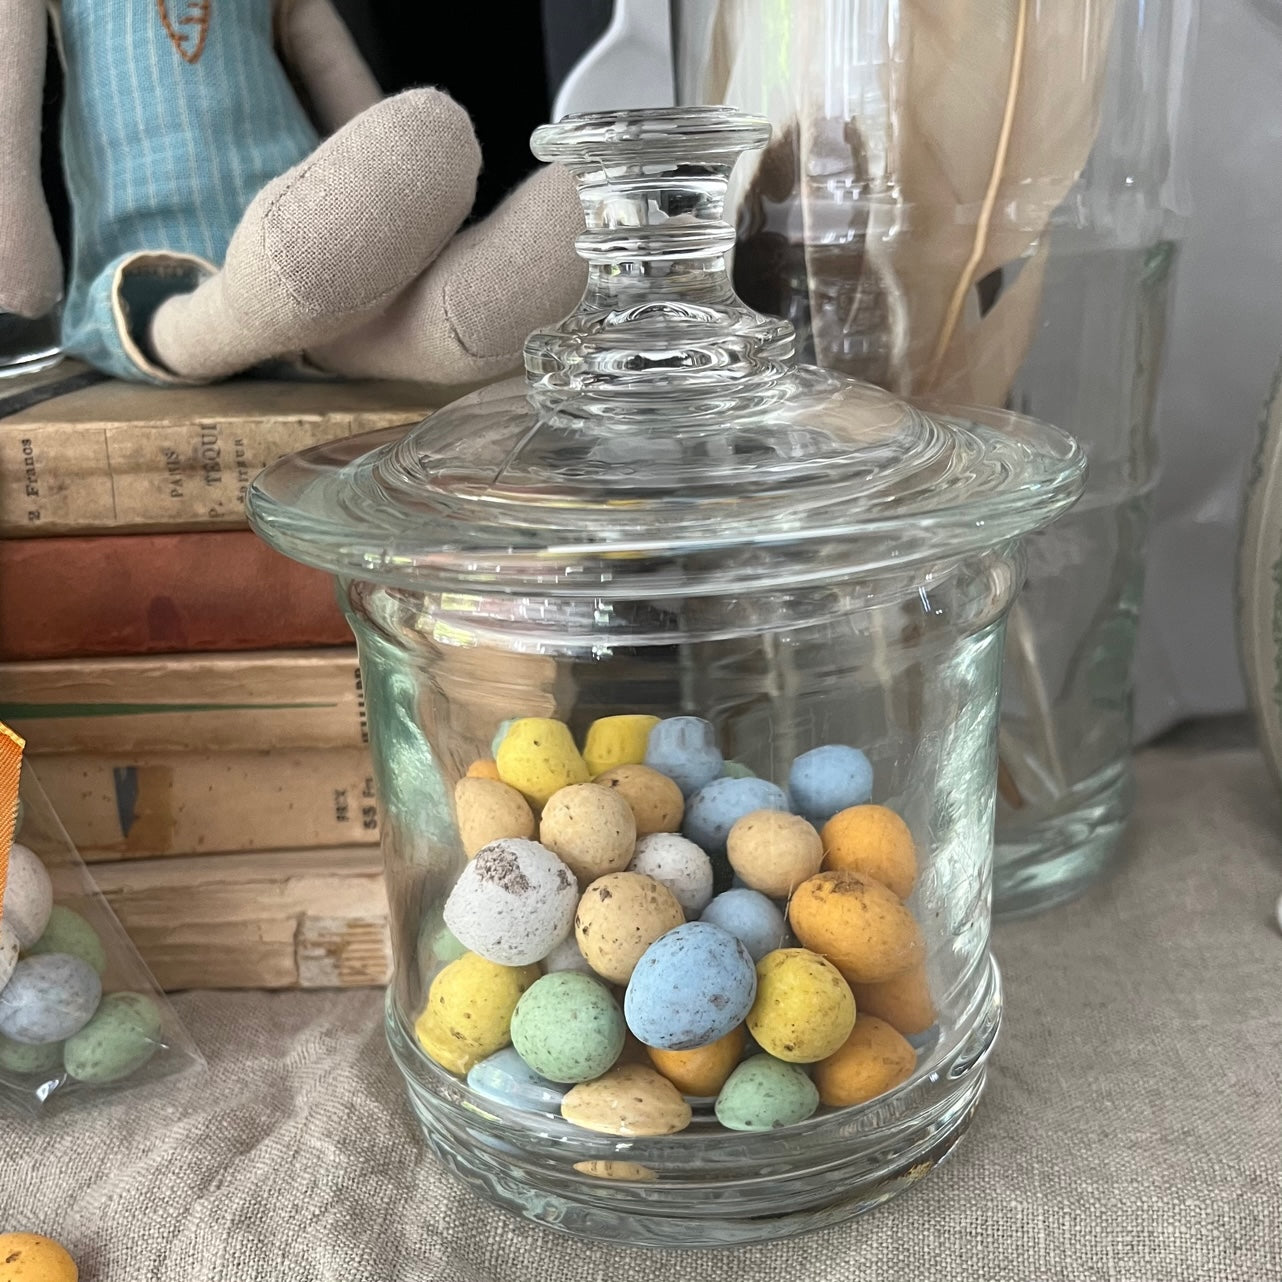 Belgian Easter eggs